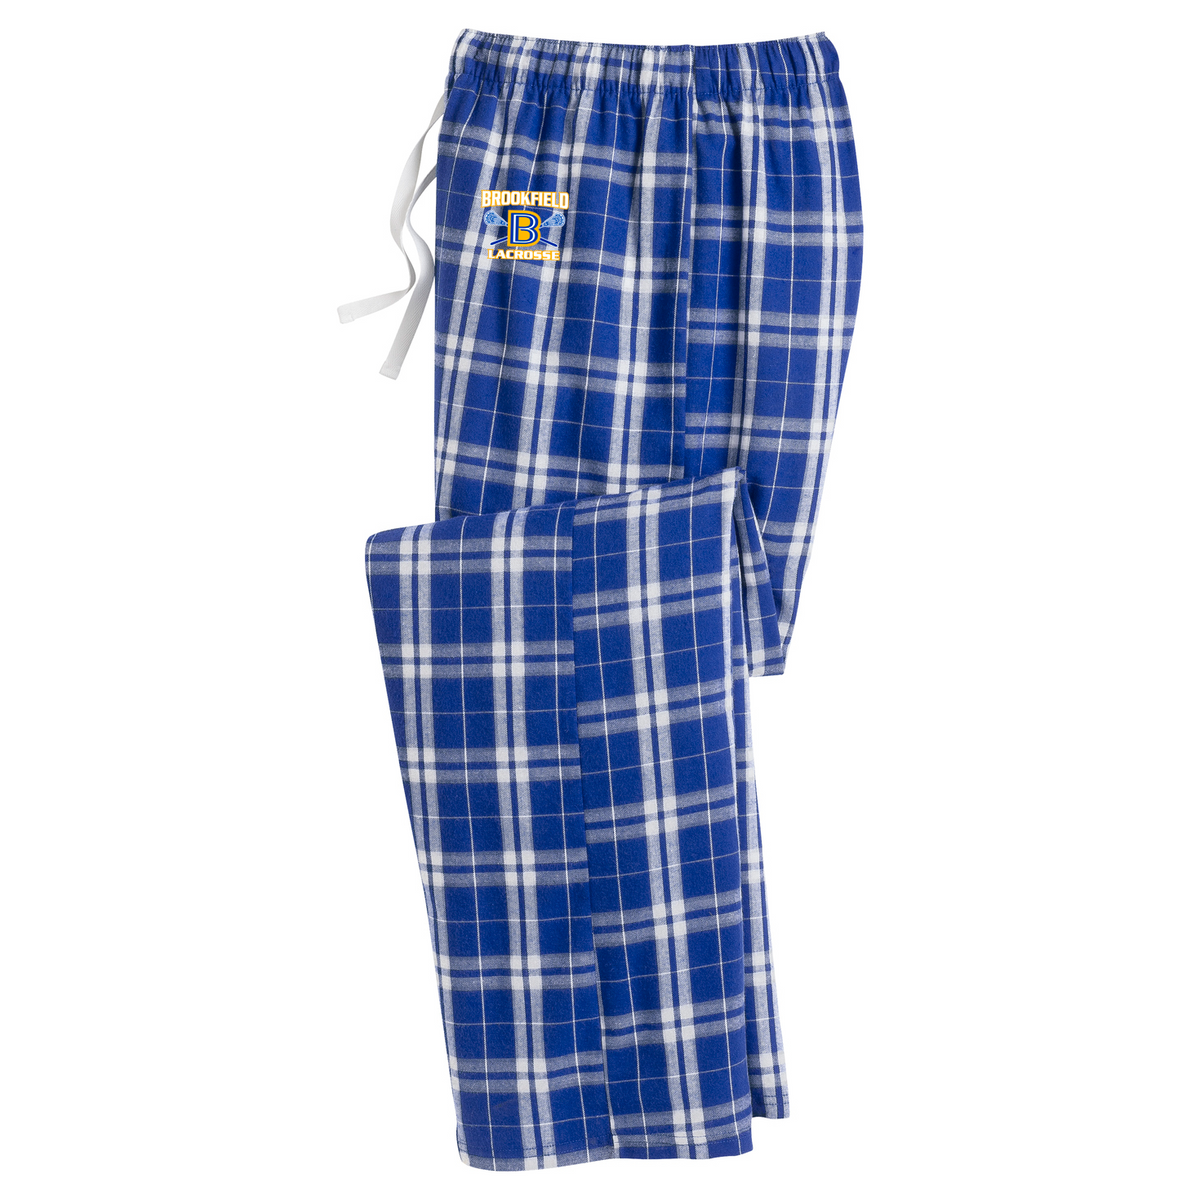 Brookfield Lacrosse Plaid Pajama Pants